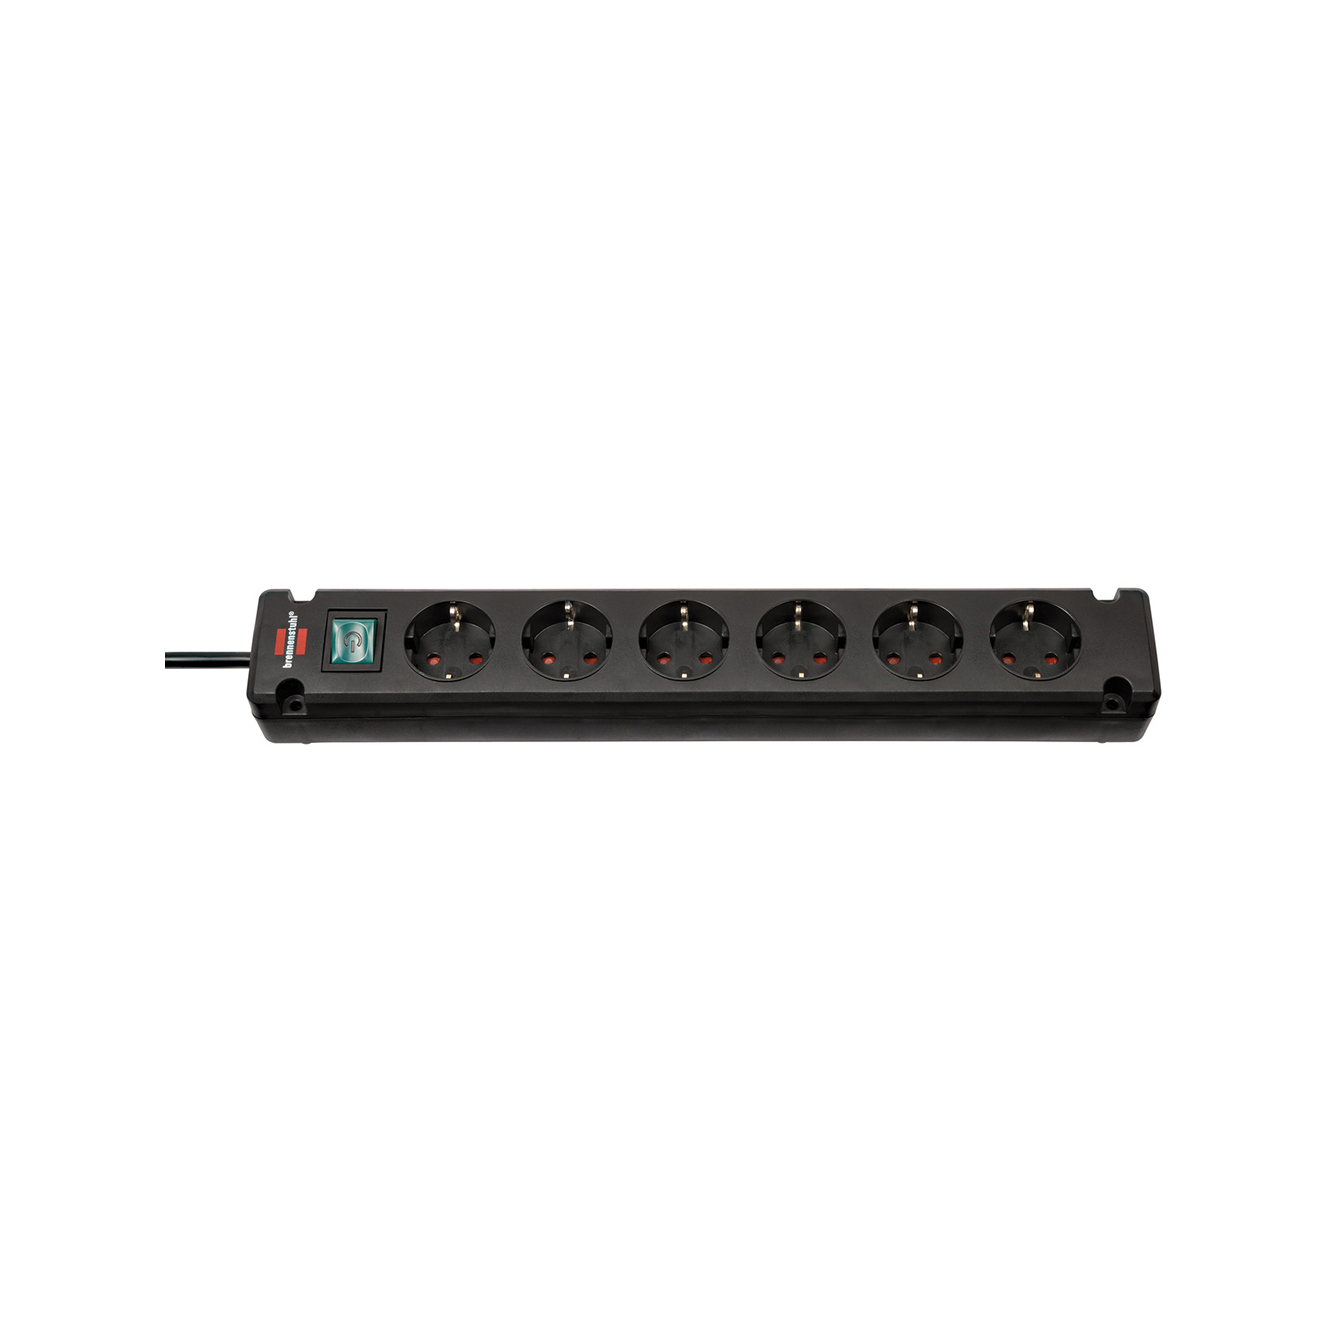 Удлинитель Brennenstuhl Comfort-Line Bremounta 6 розеток кабель 3 м H05VV-F 3G1,5 черный 1150650316